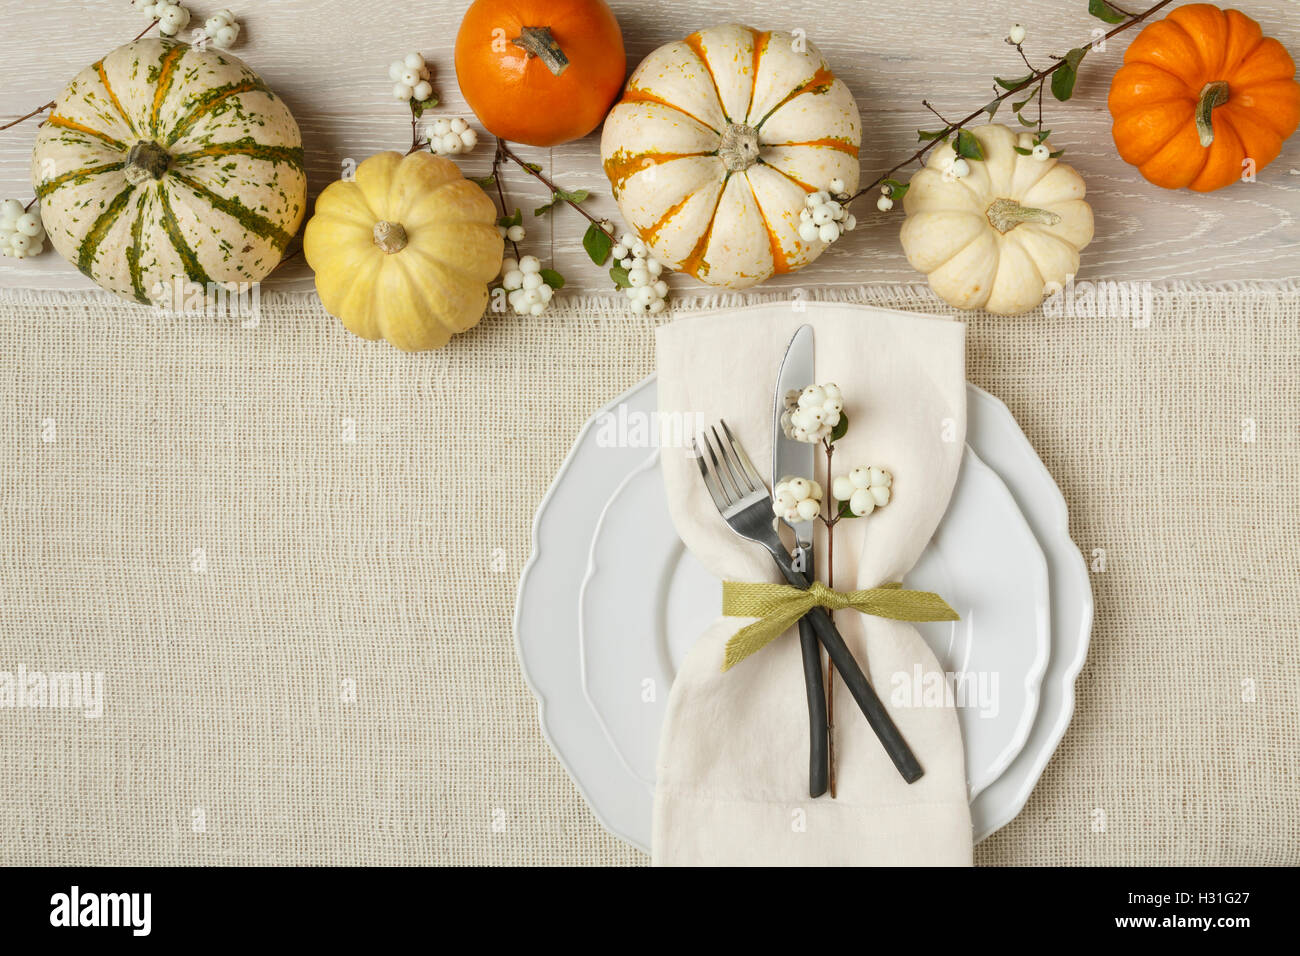 Fête de l'automne automne dîner de Thanksgiving table place setting with miniature citrouilles, assiette, couteau, fourchette et serviette sur fond de toile Banque D'Images